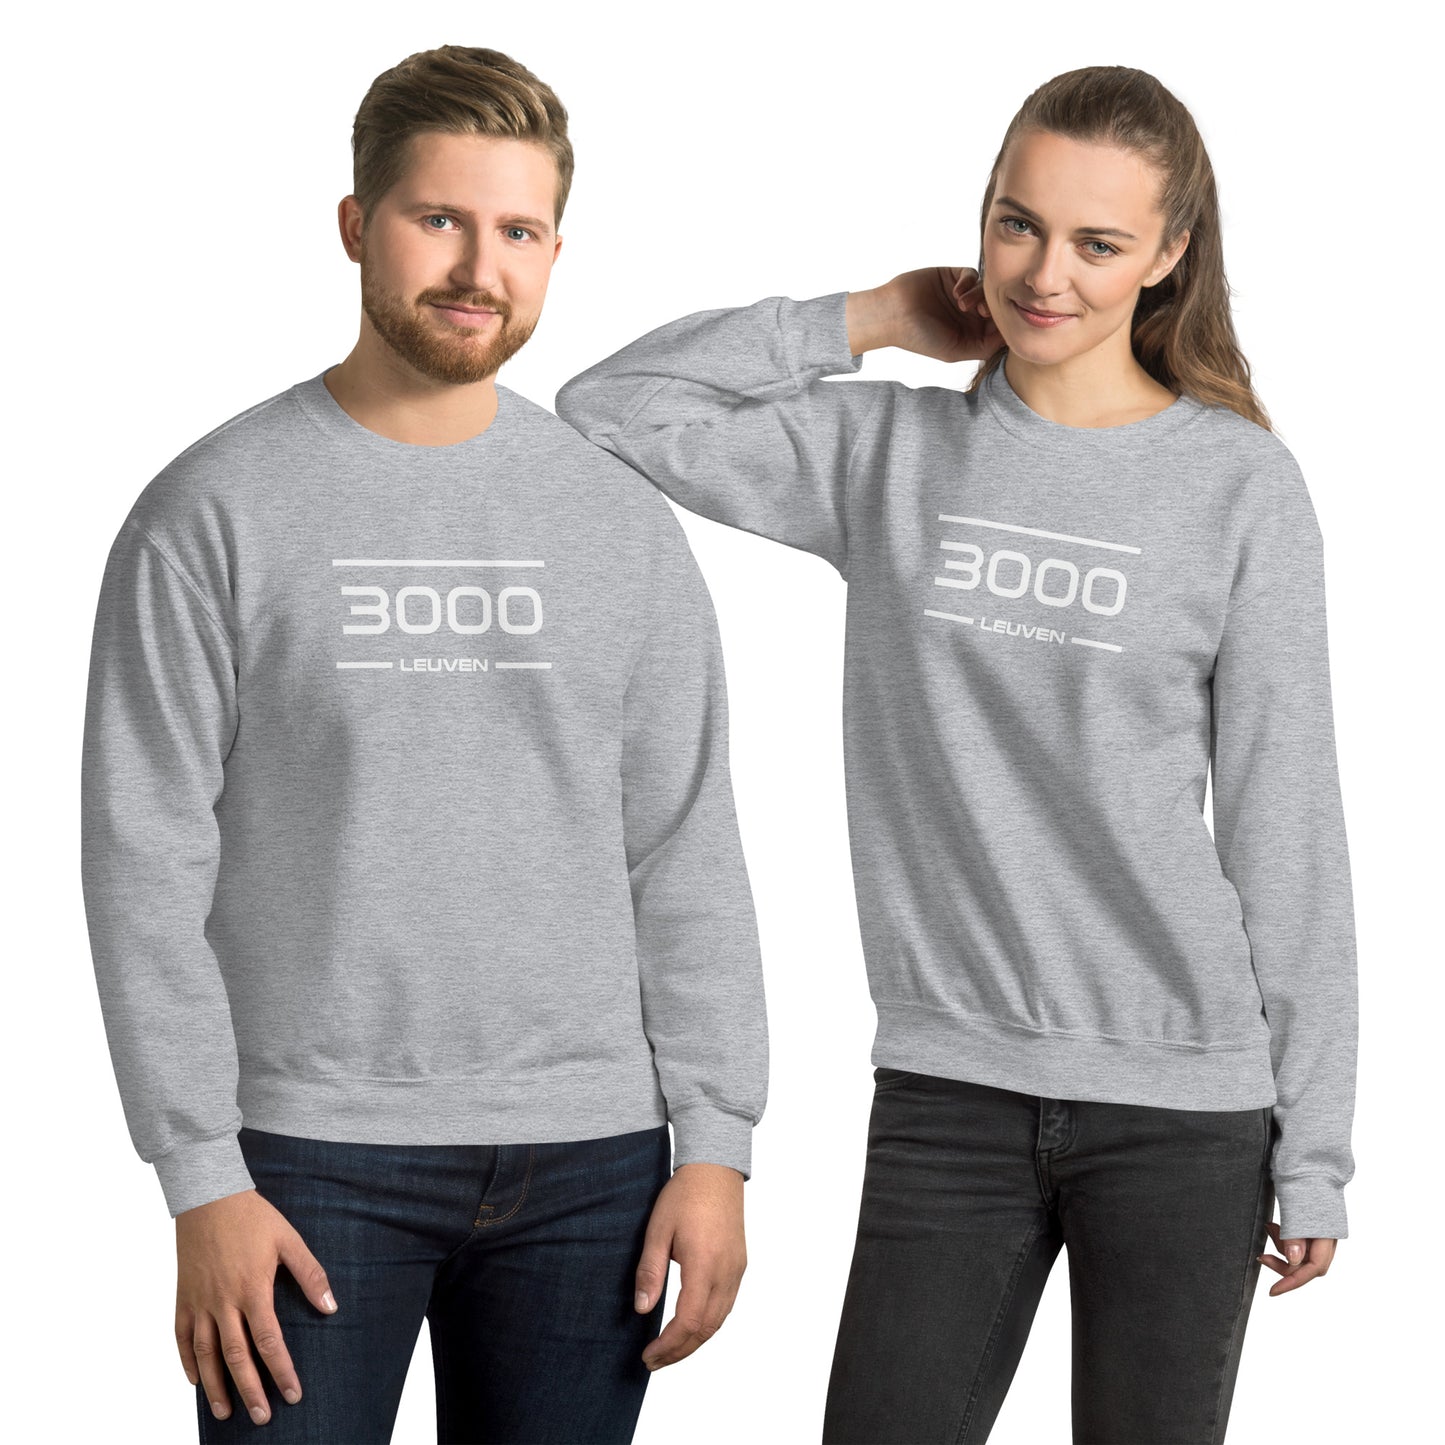 Sweater - 3000 - Leuven (M/V)